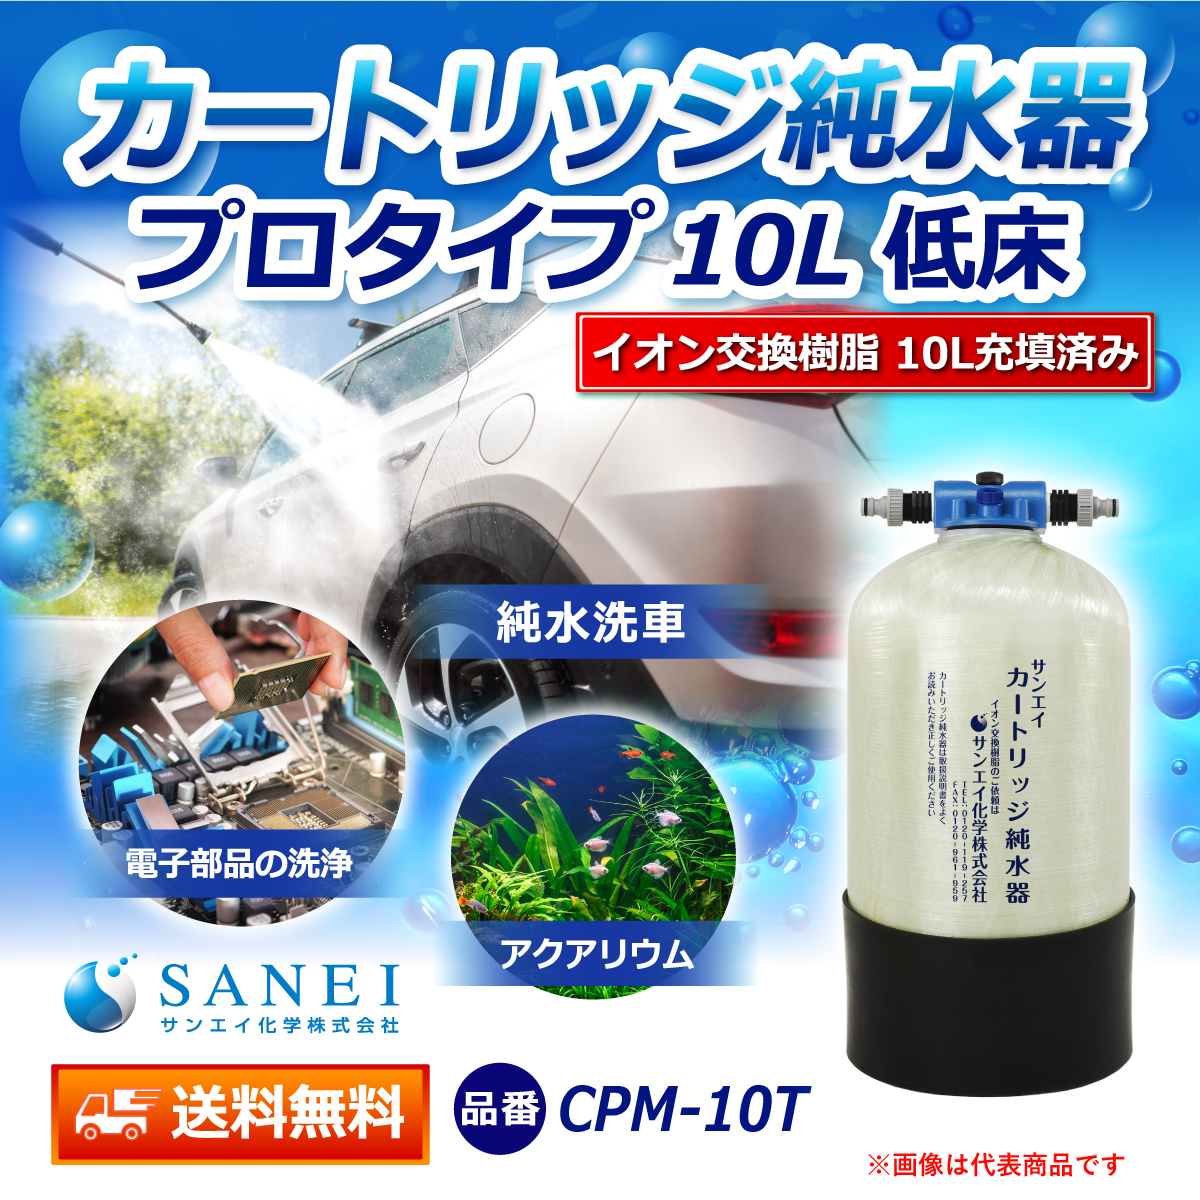 サンエイ化学 カートリッジ純水器 10L プロタイプ 低床タイプ CPM-10T イオン交換樹脂 10L入り【純水器 本体単品】